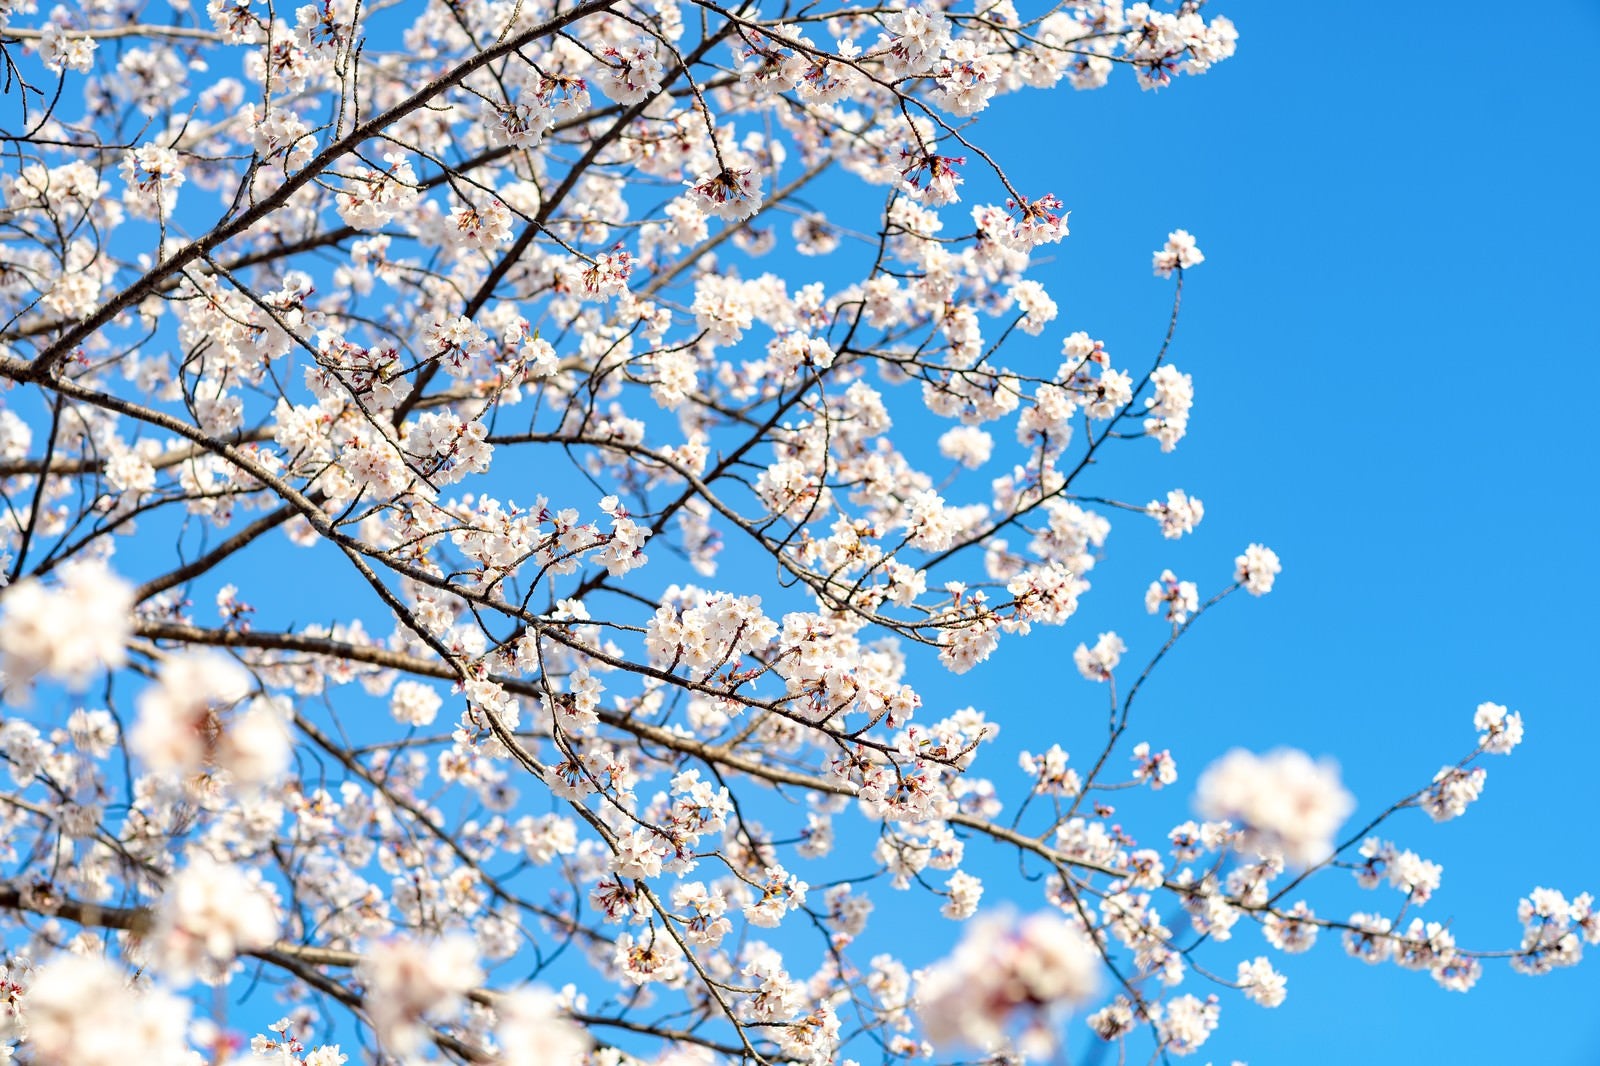 「青空と桜の様子」の写真